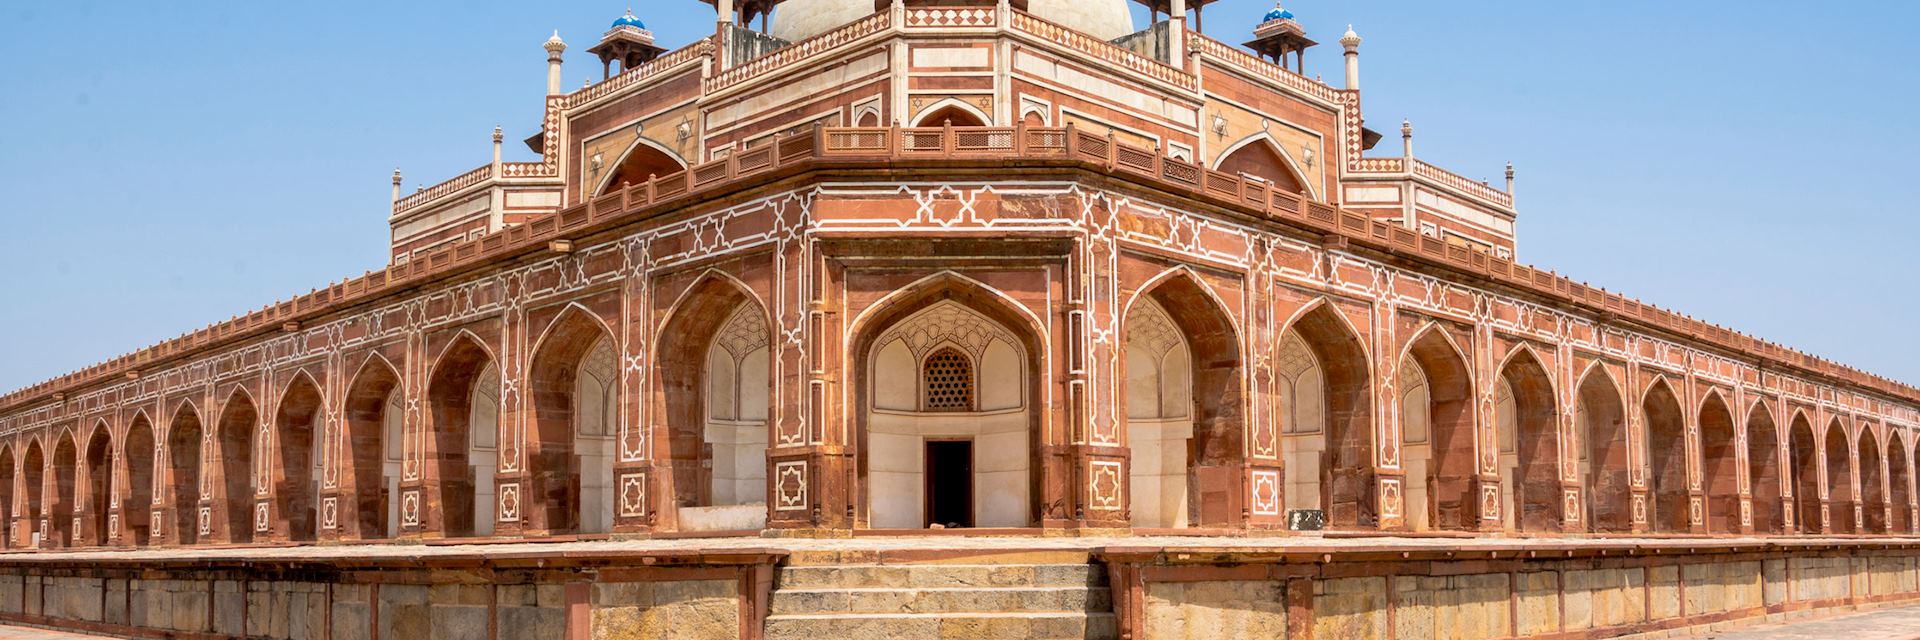 Humayun's Tomb, Delhi, India